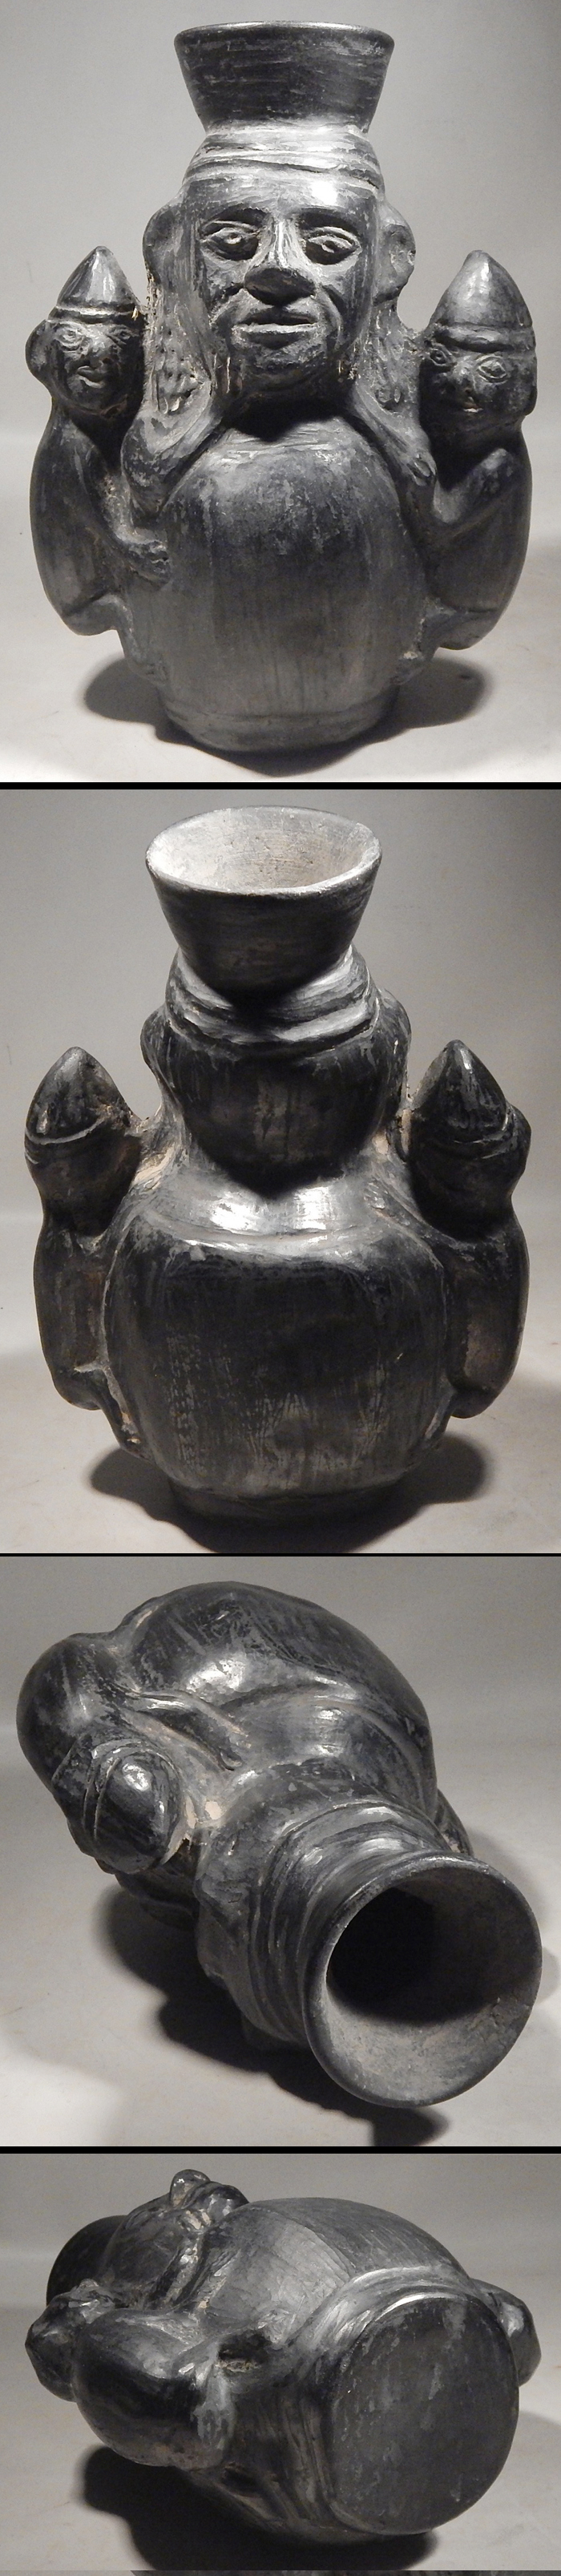 Pre-Columbian Peru Chimu Inca Maternal Figure Figural Vessel